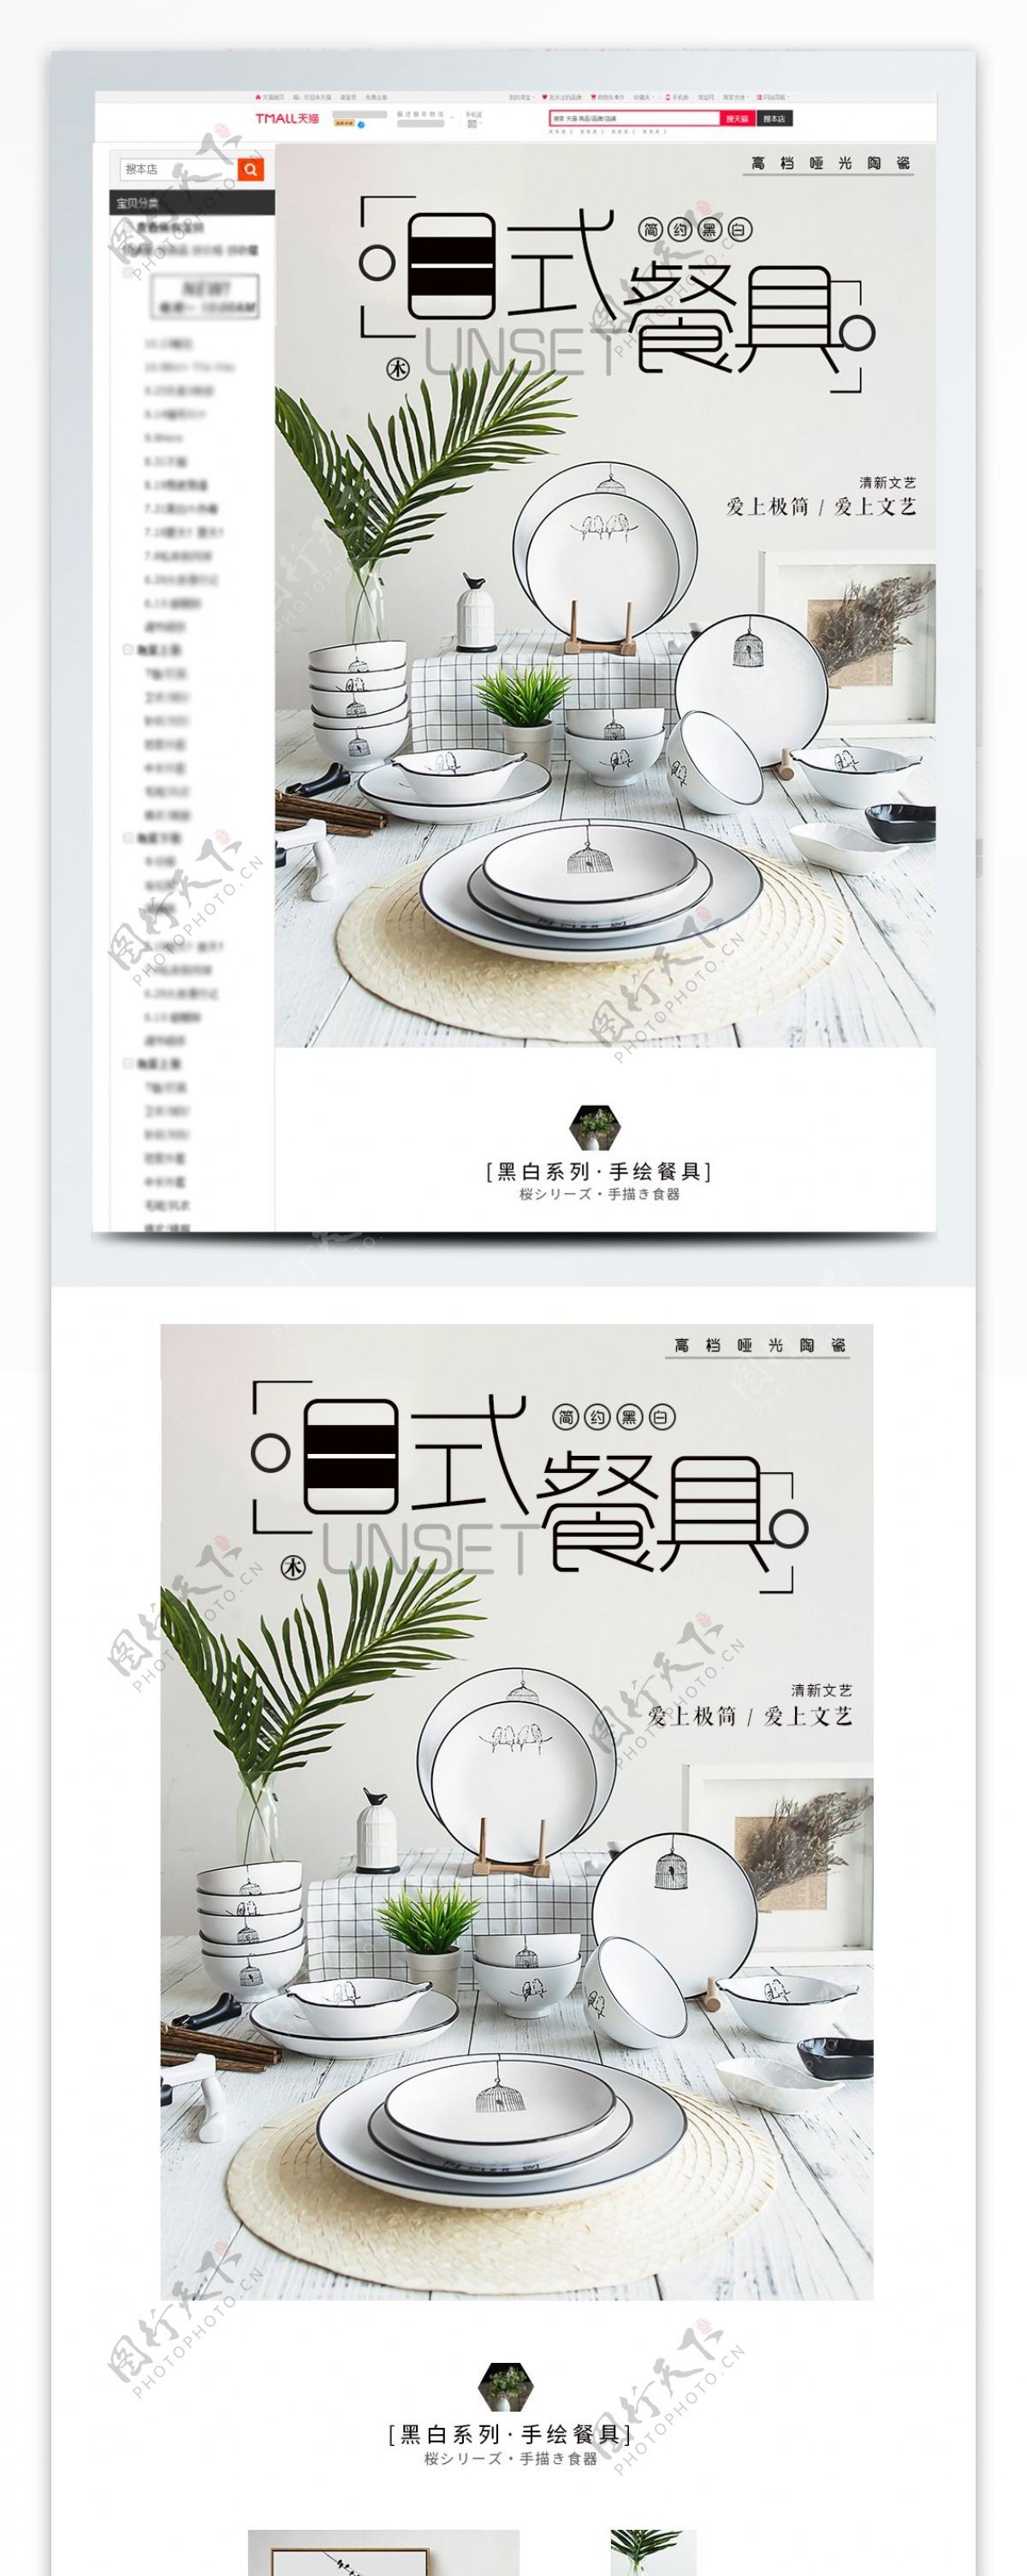 简约黑白卡通风格日式餐具详情页模板